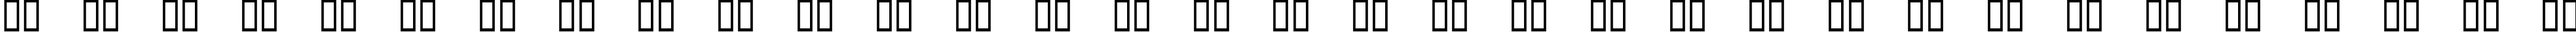 Пример написания русского алфавита шрифтом Format